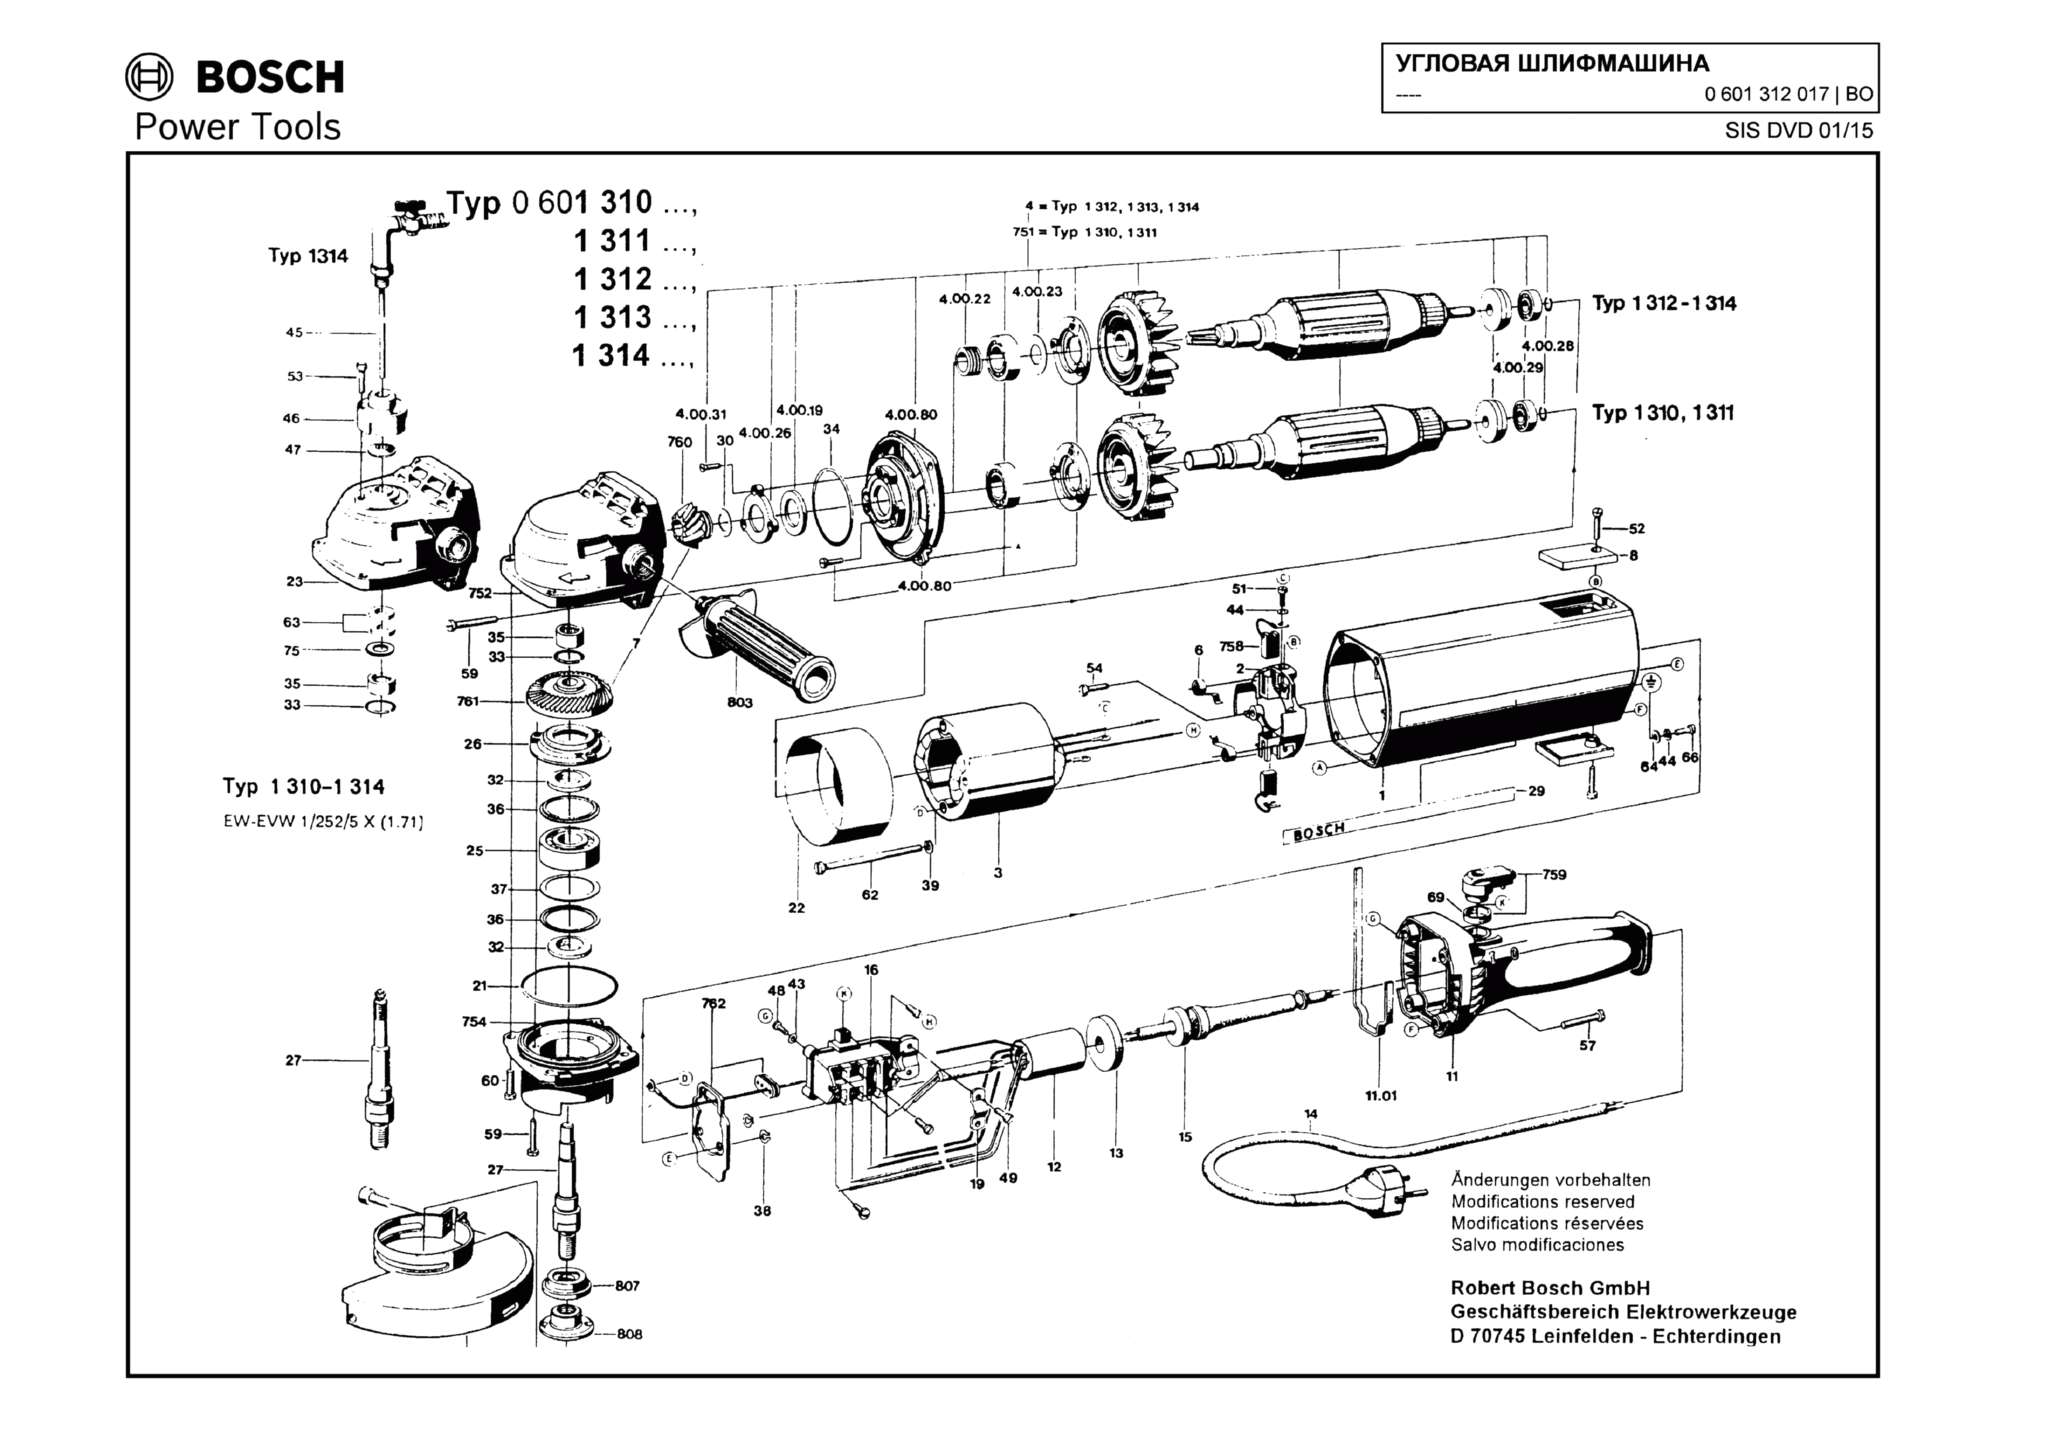 Запчасти, схема и деталировка Bosch (ТИП 0601312017)